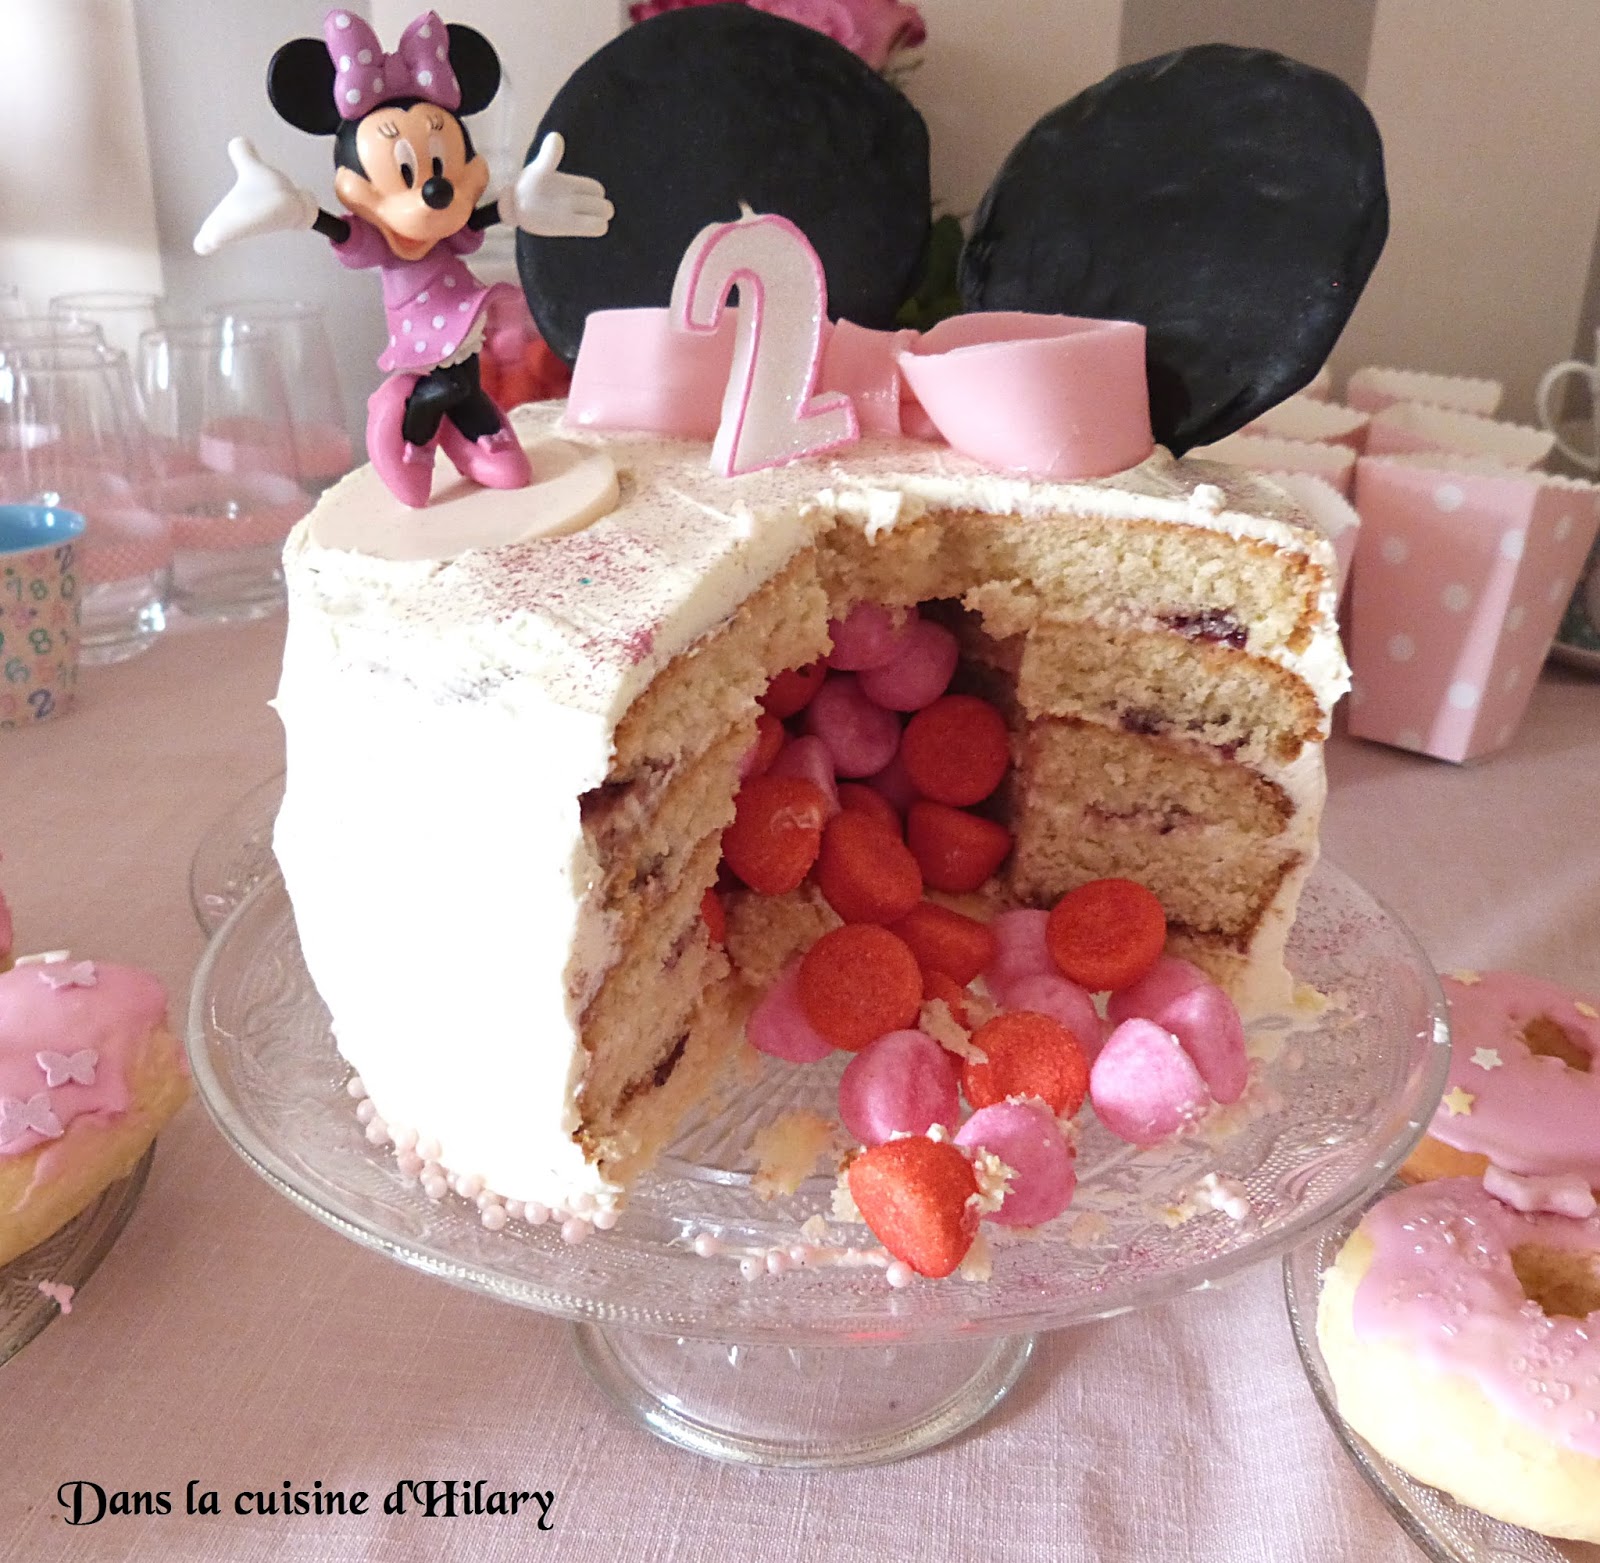 Dans la cuisine d'Hilary: Pinata cake version Minnie Mouse pour les 2 ans  d'une princesse / Minnie Mouse Pinata cake for a 2 year old princess